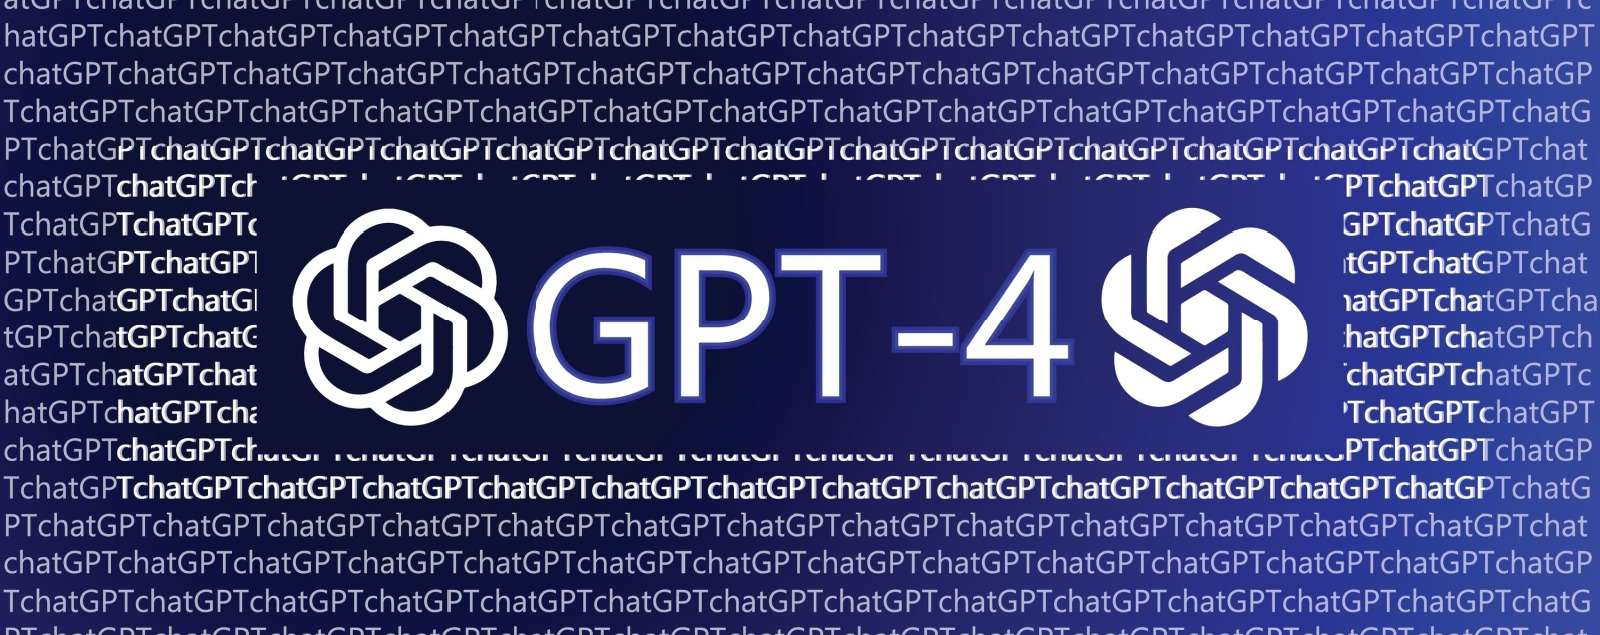 GPT-4: Nový ChatGPT, ktorý prichádza do viacerých známych aplikácií